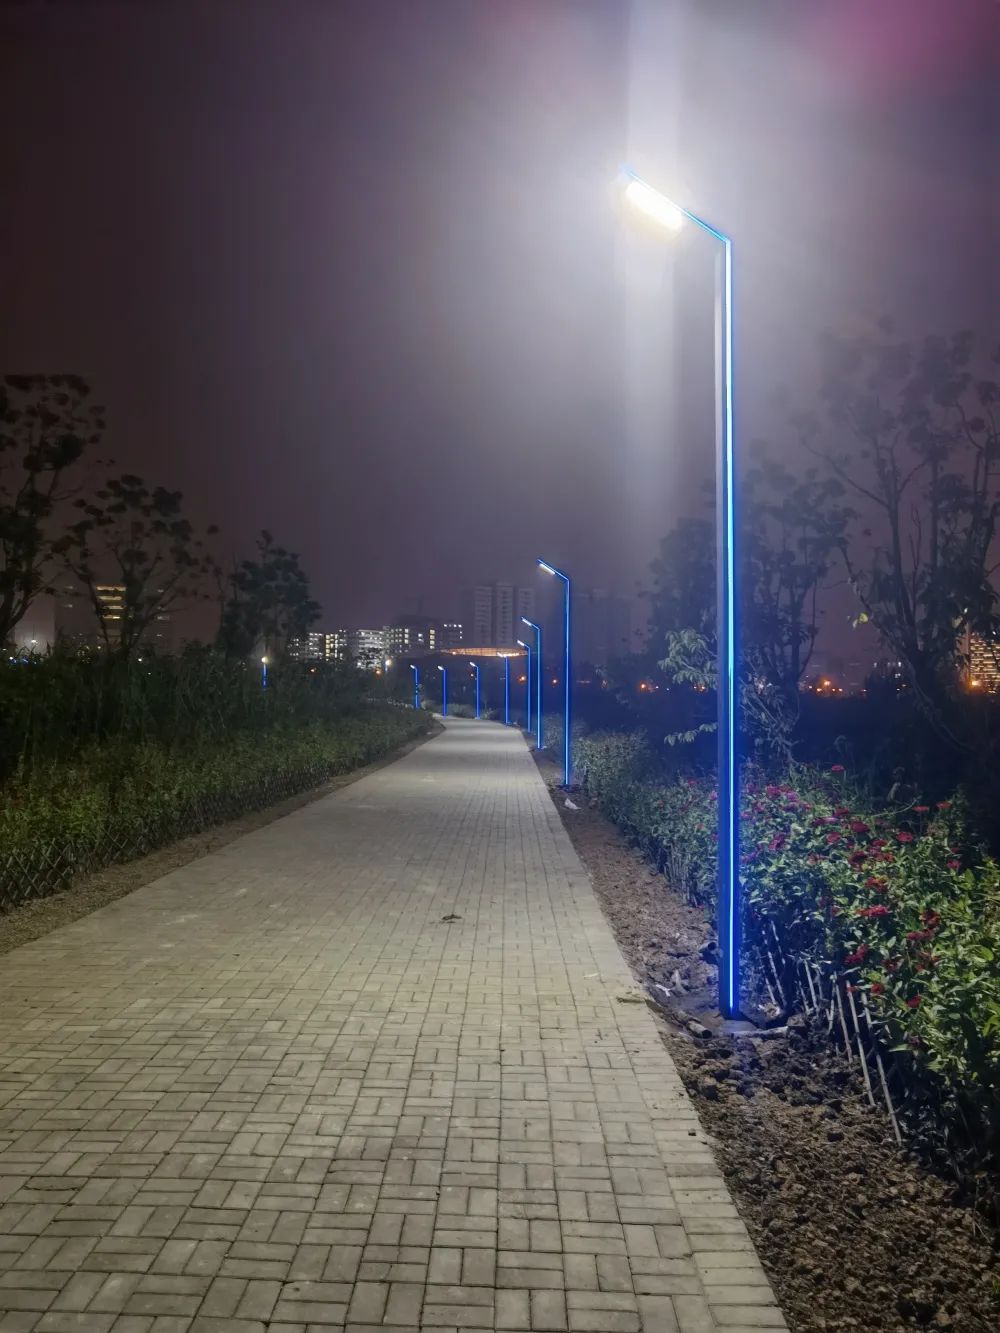 合肥高新区中科大游园夜间照明设施完成改造提升